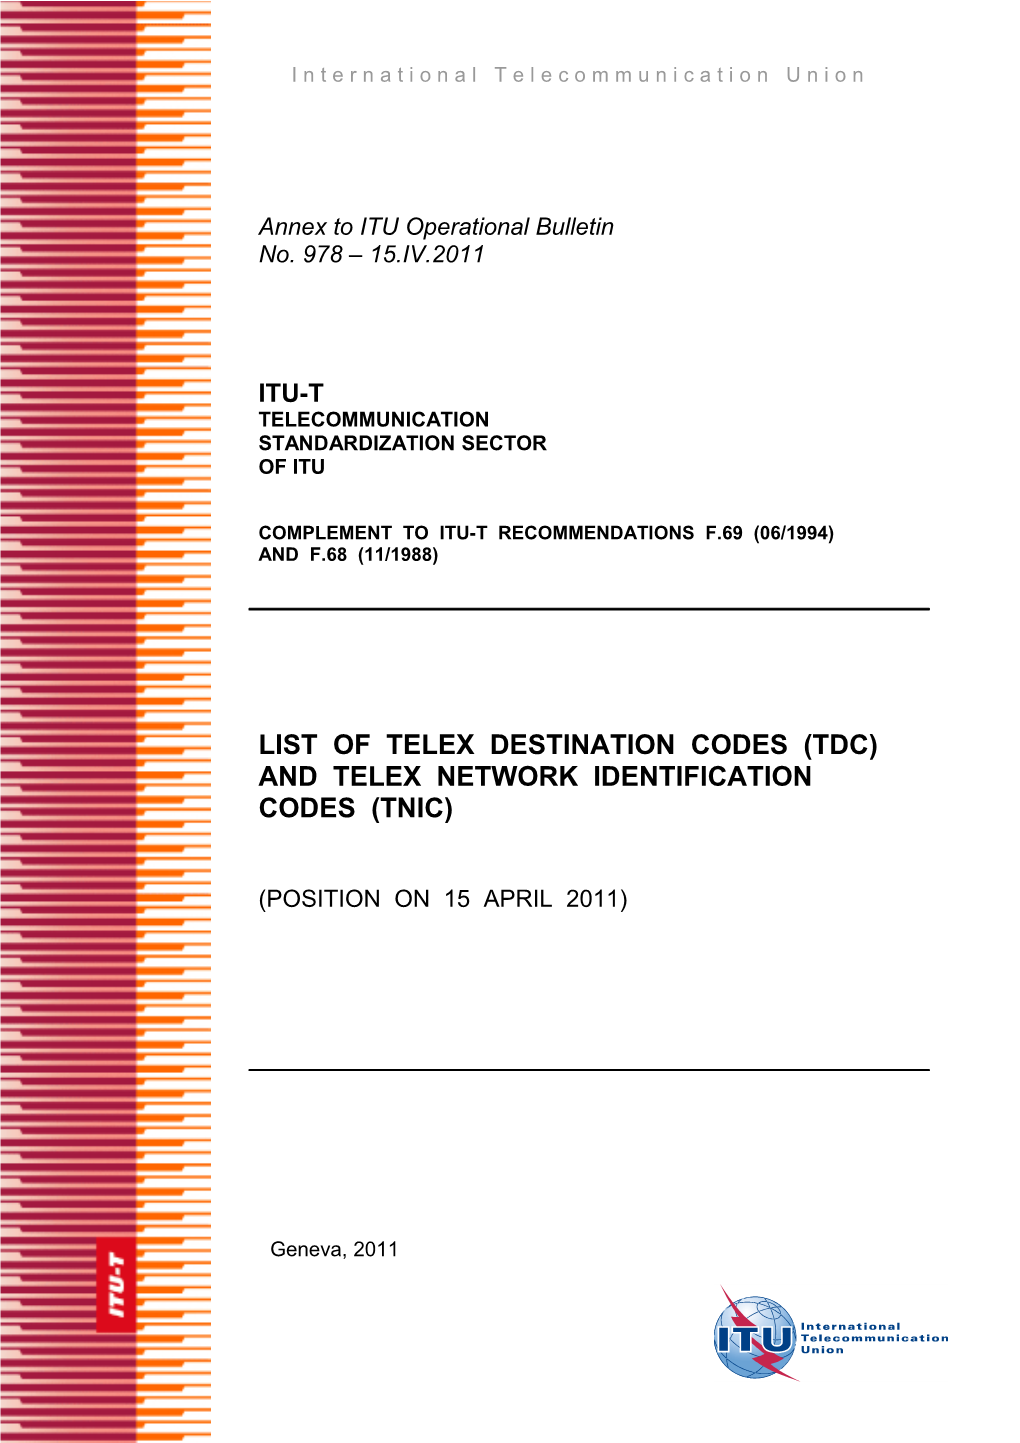 Annex to ITU Operational Bulletin No. 878